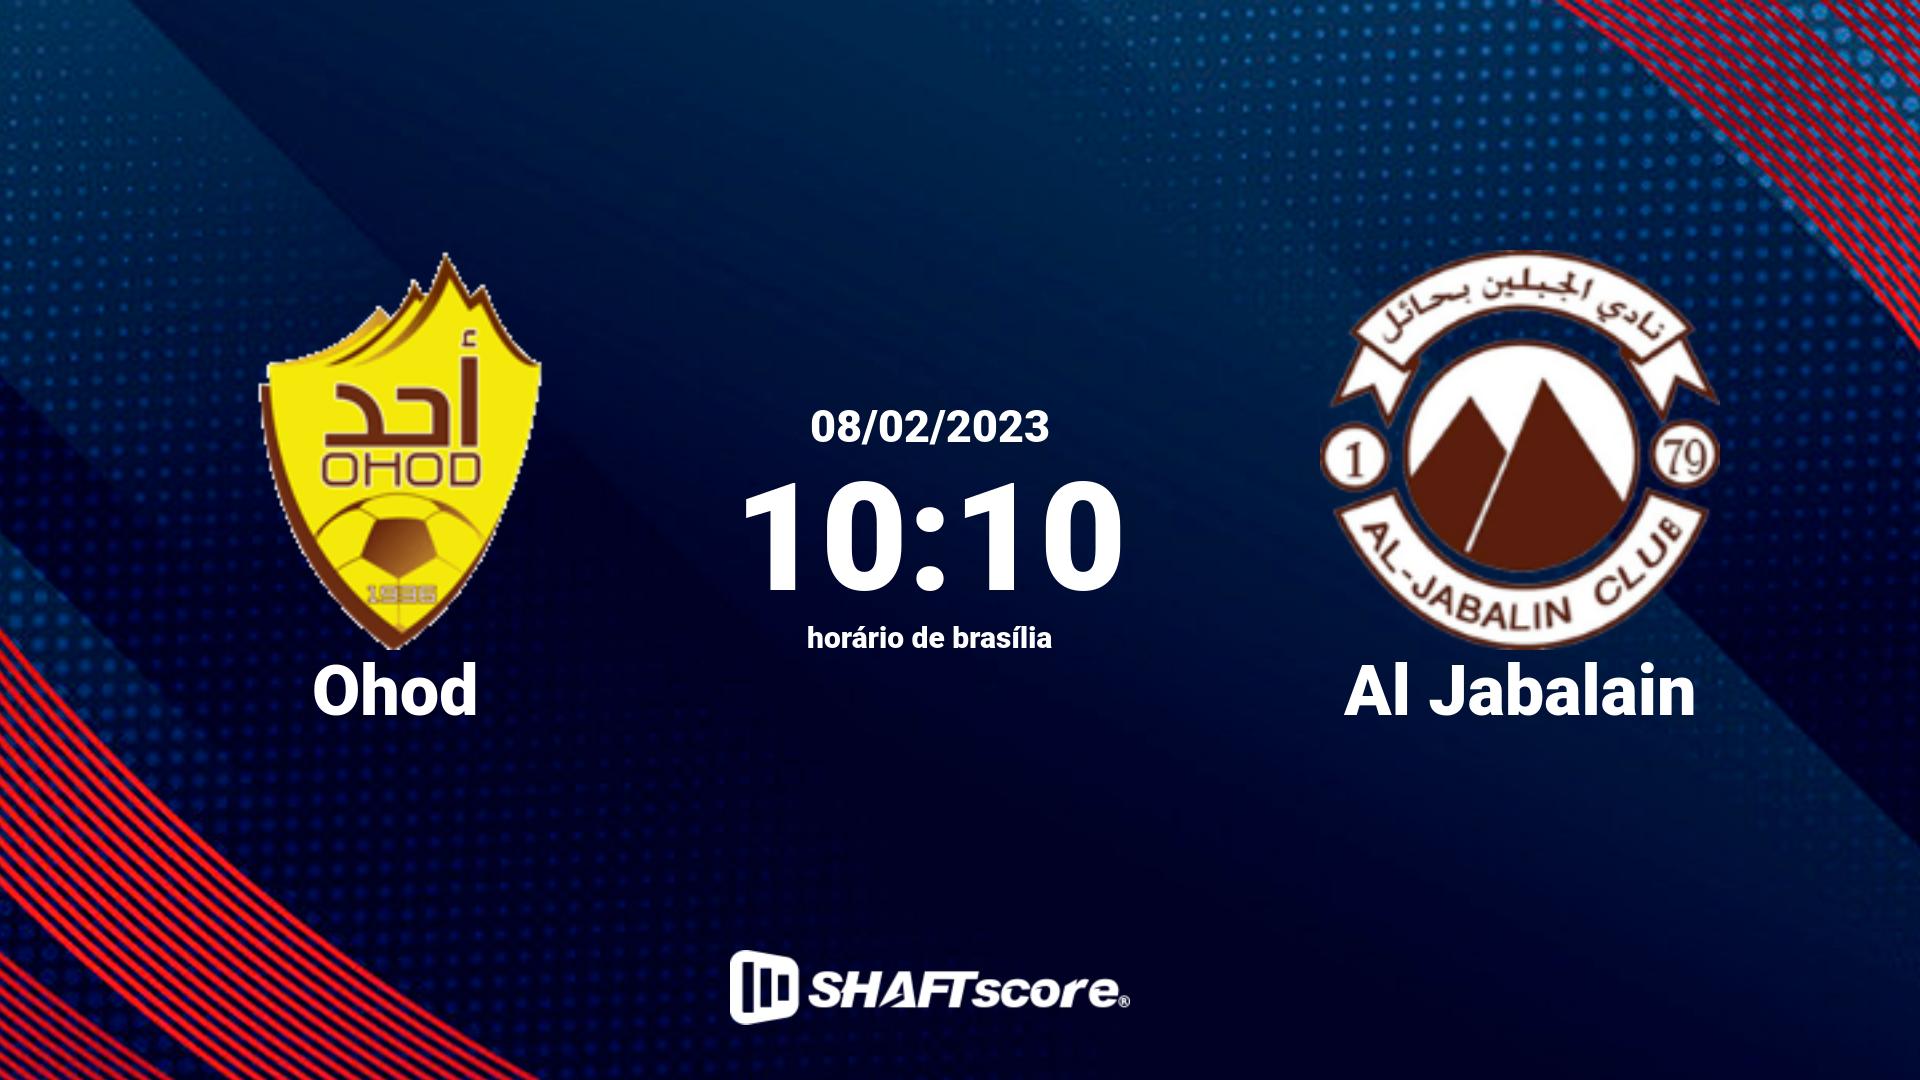 Estatísticas do jogo Ohod vs Al Jabalain 08.02 10:10